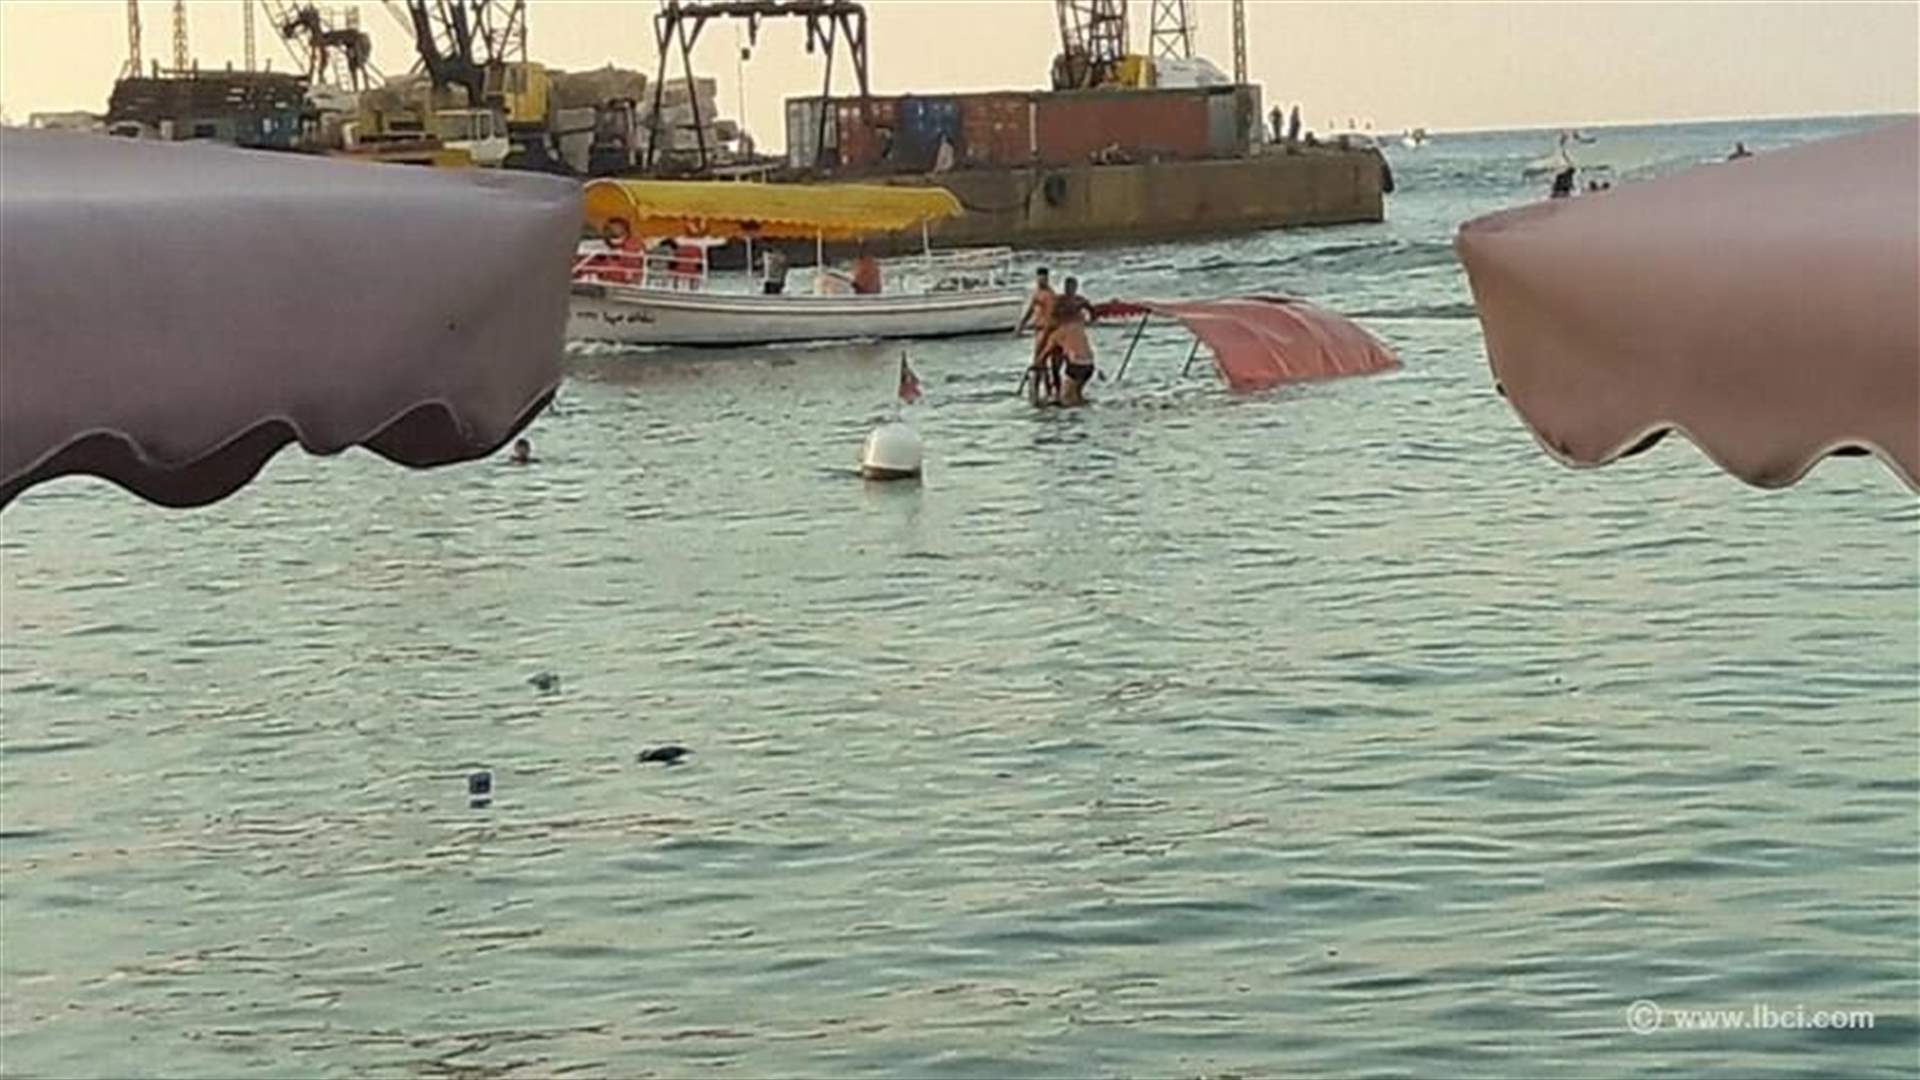 [PHOTOS] Boat capsizes off Sidon coast